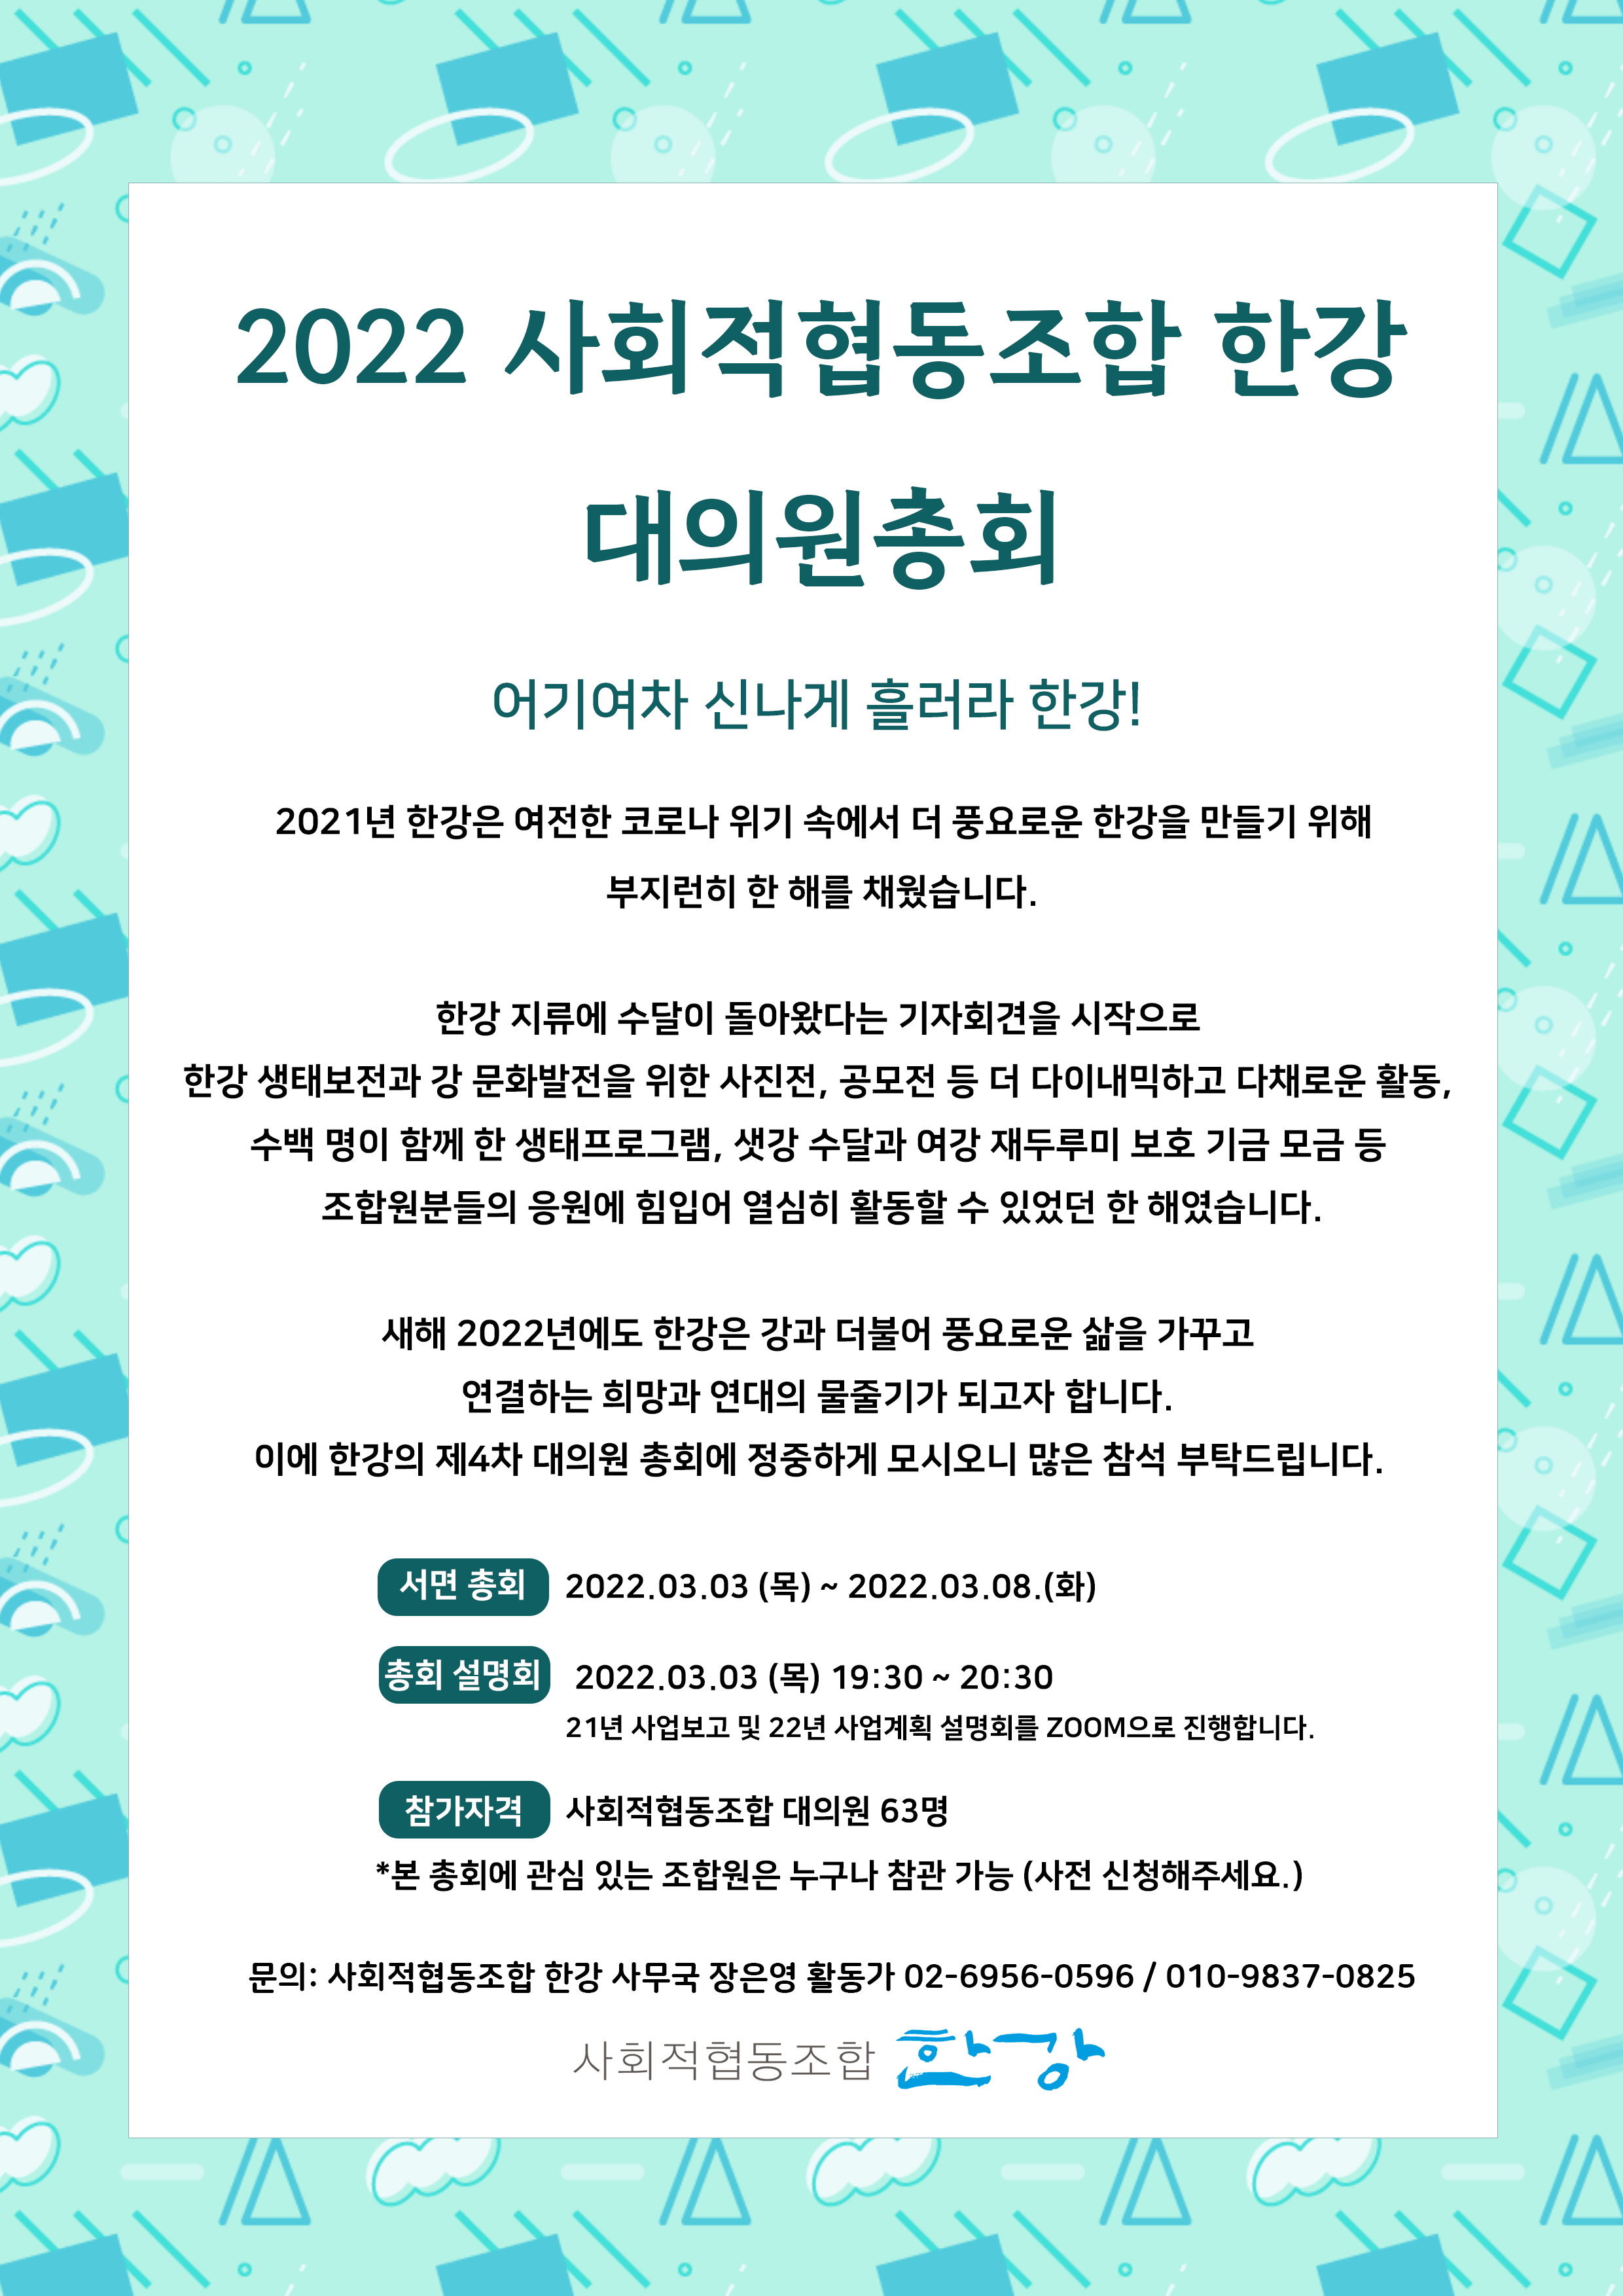 2022 대의원 총회공고-웹자보-수정.png